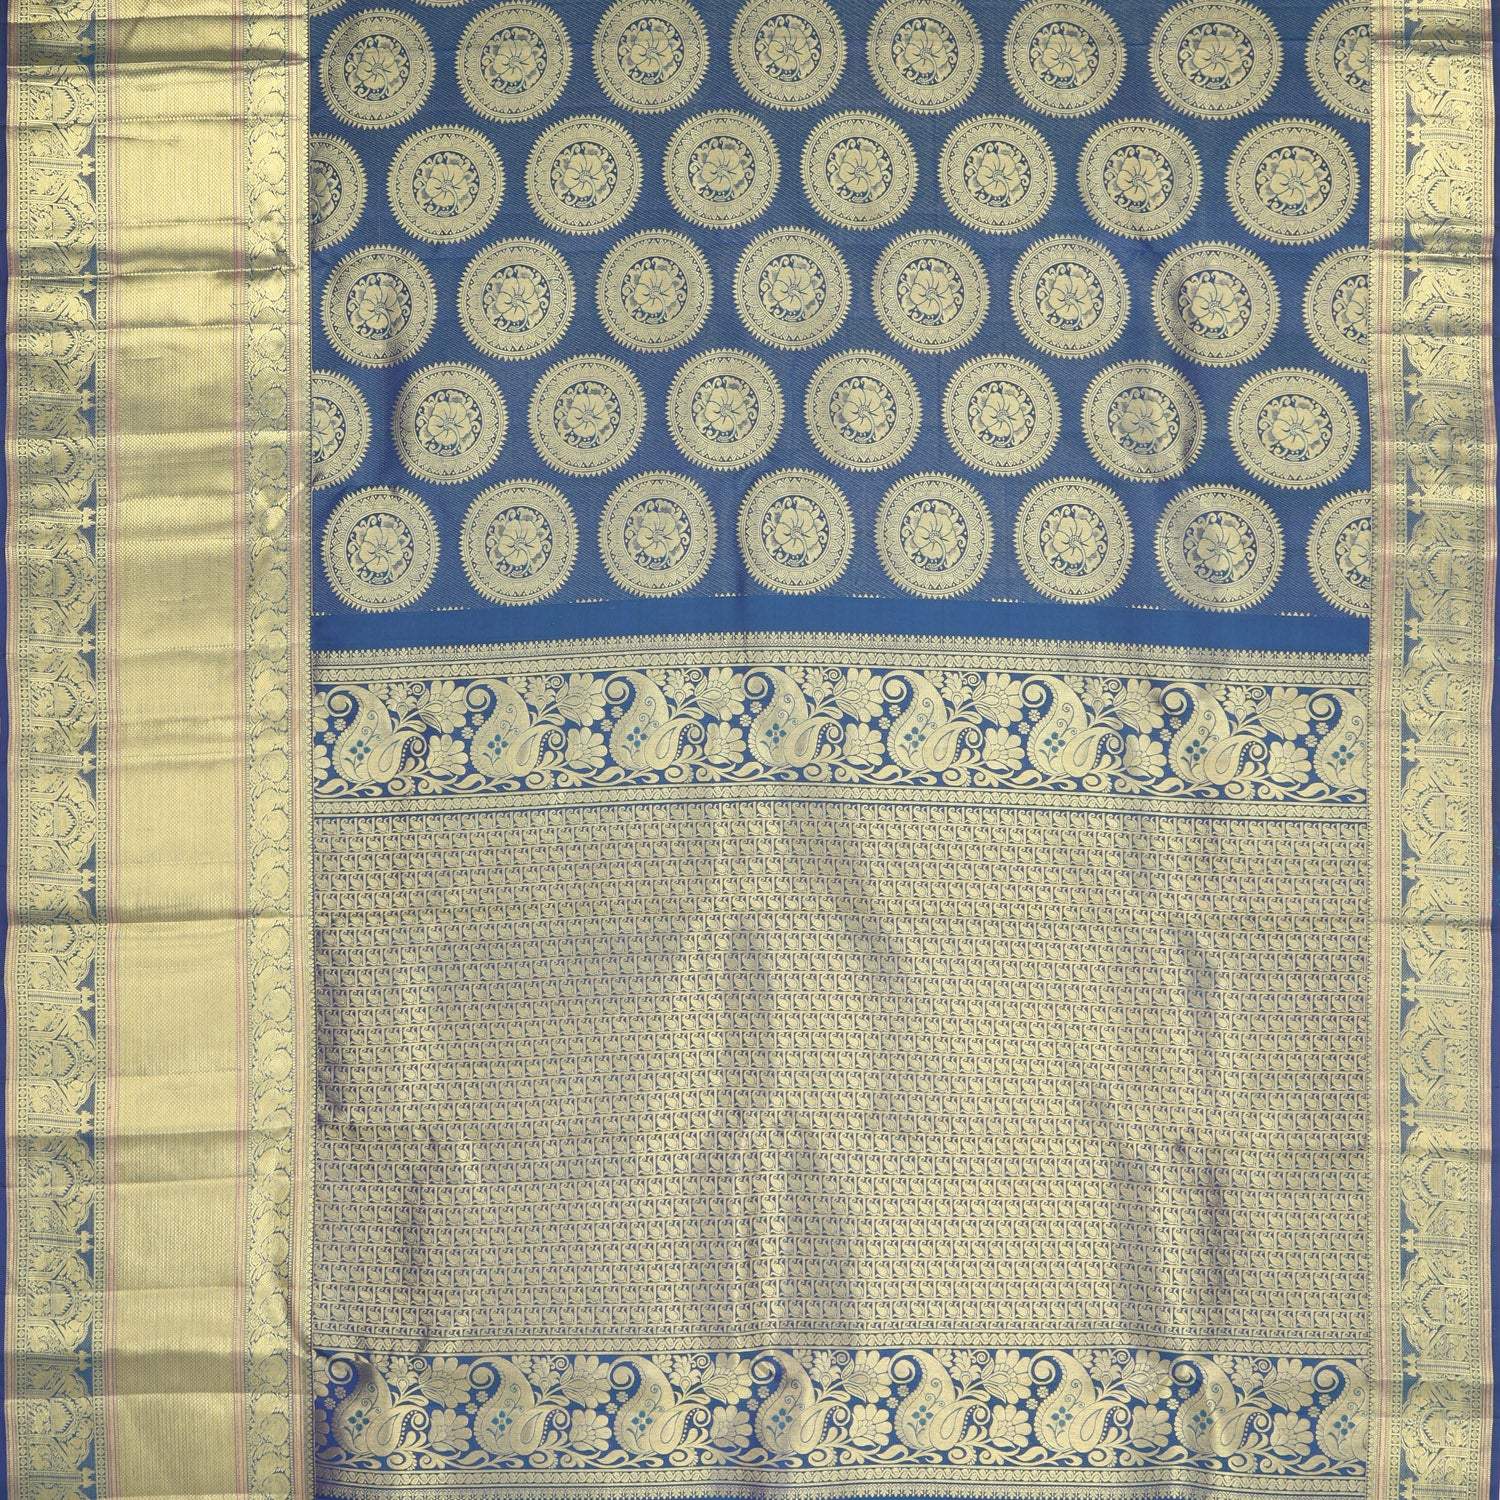 Sapphire Blue Kanjivaram Silk Saree With Floral Chakra Motifs - Singhania's